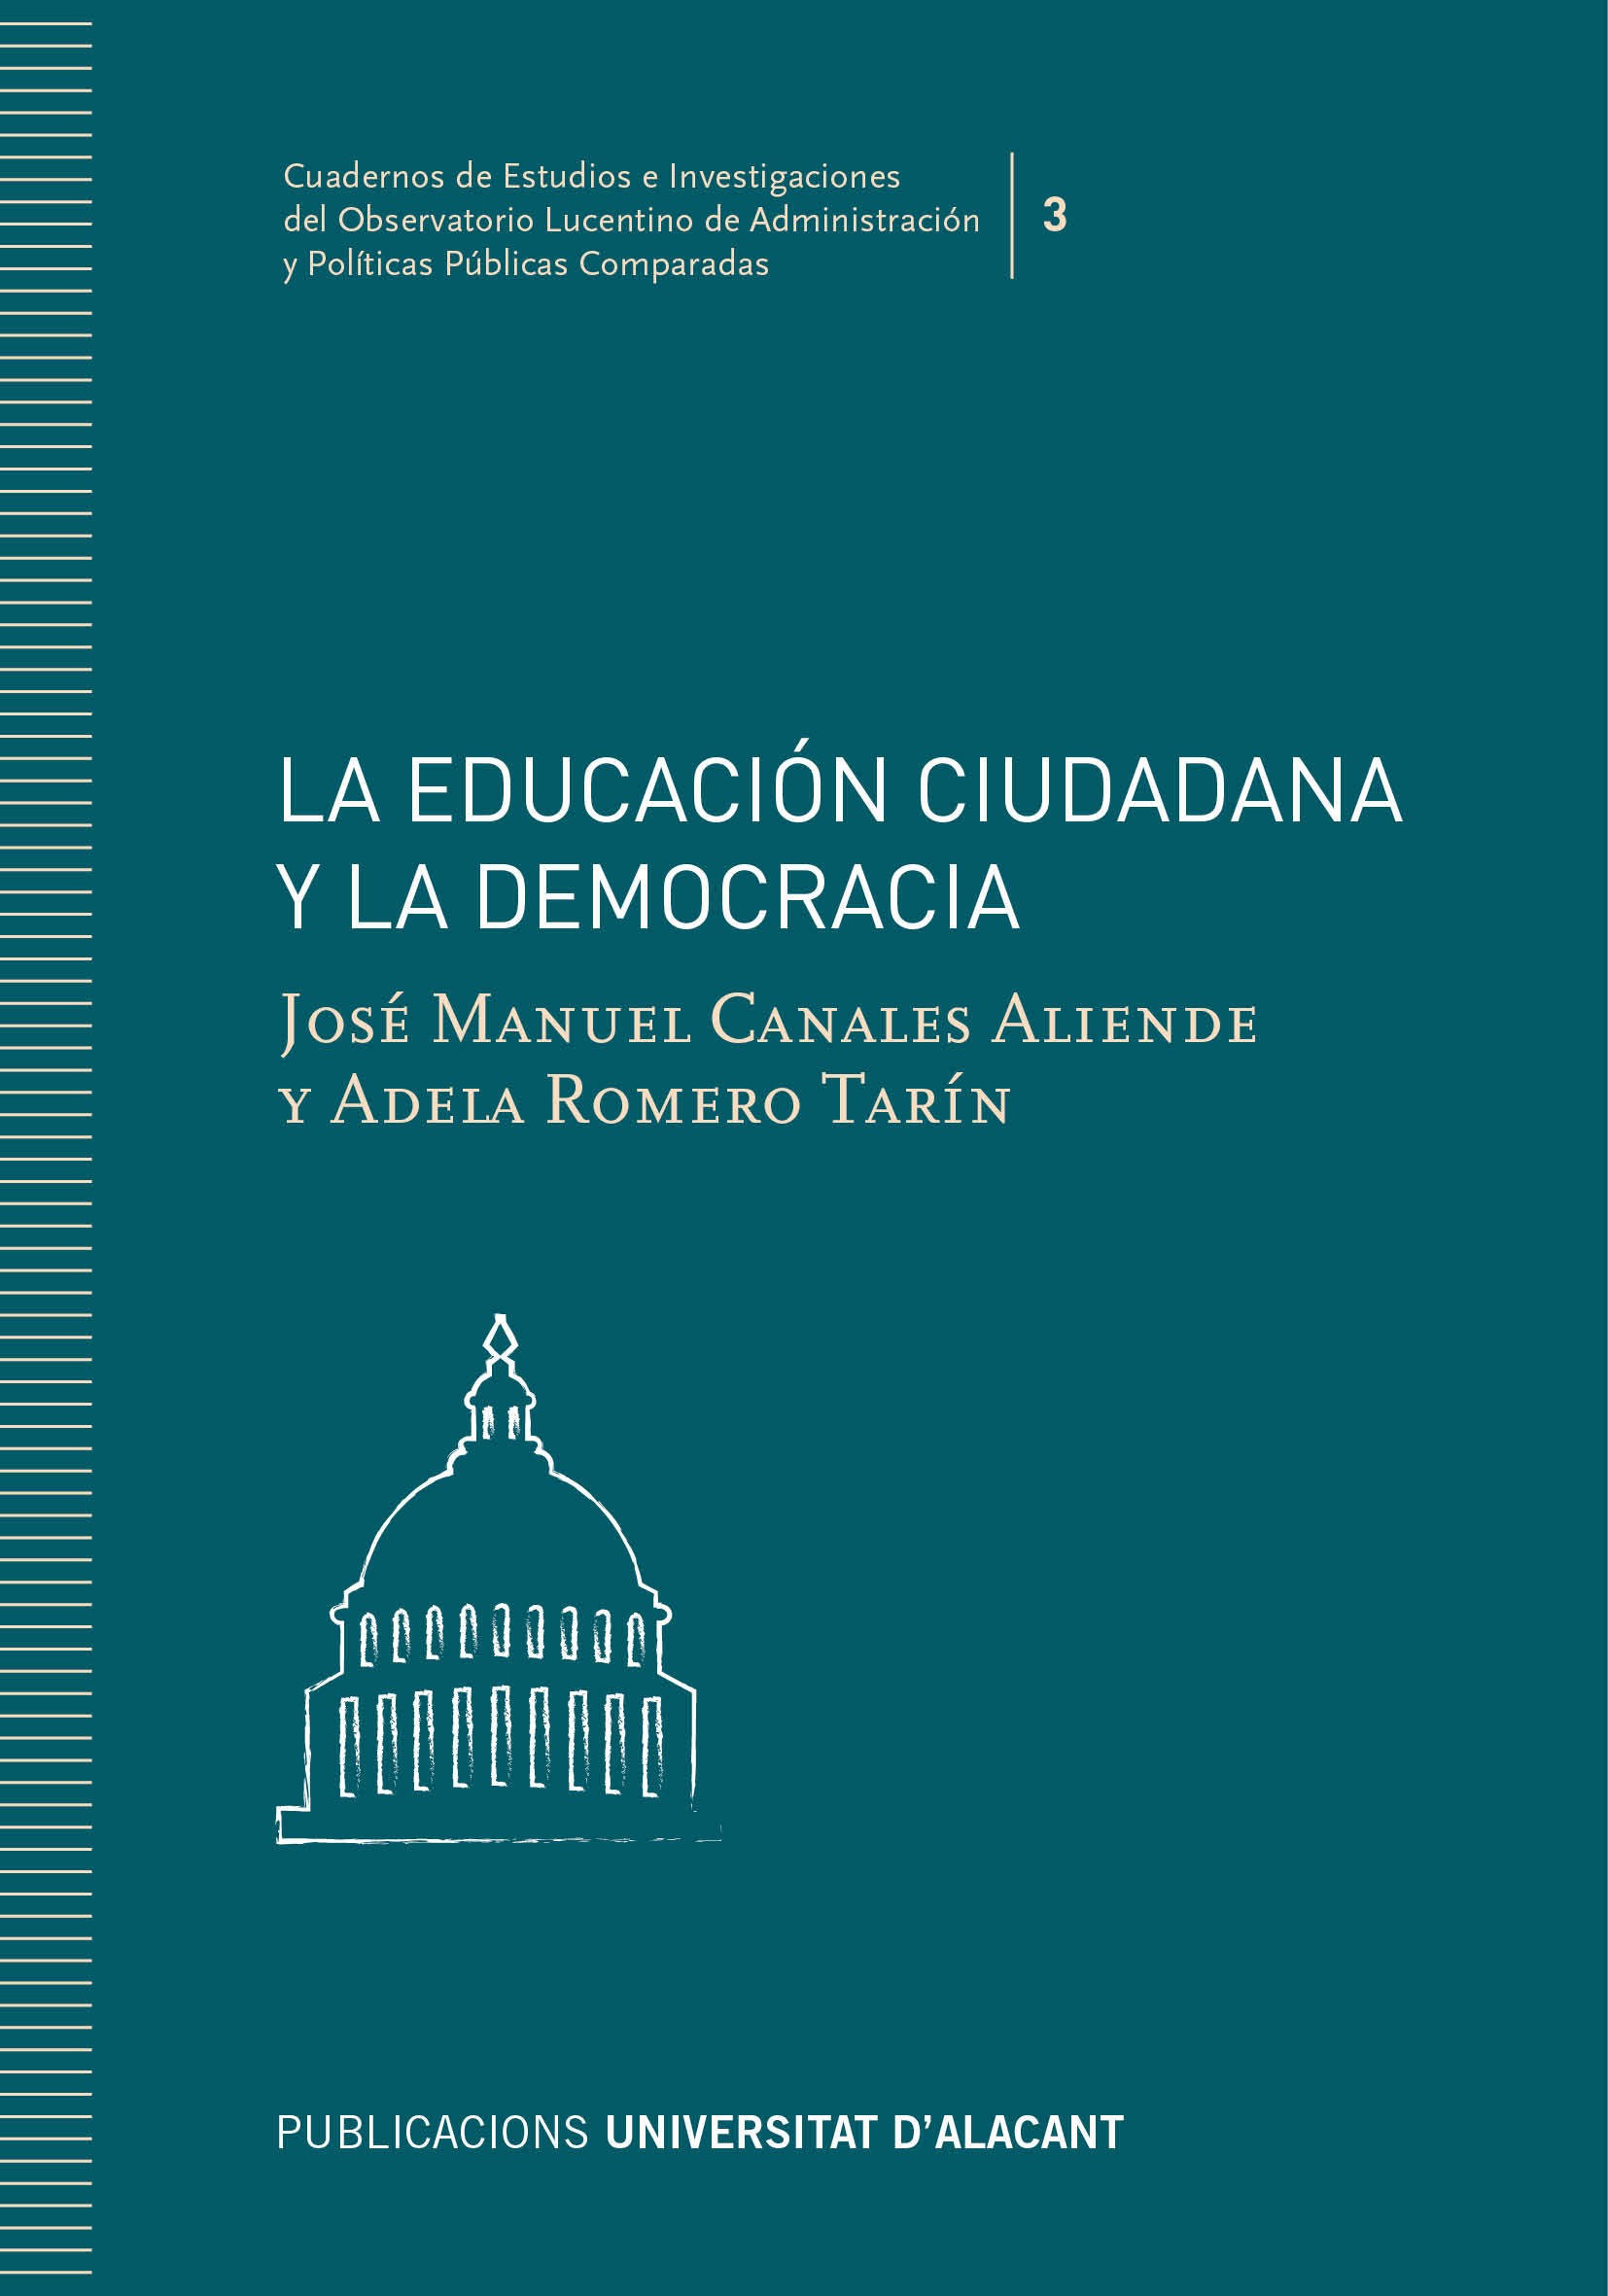 La educaciÃ³n ciudadana y la democracia